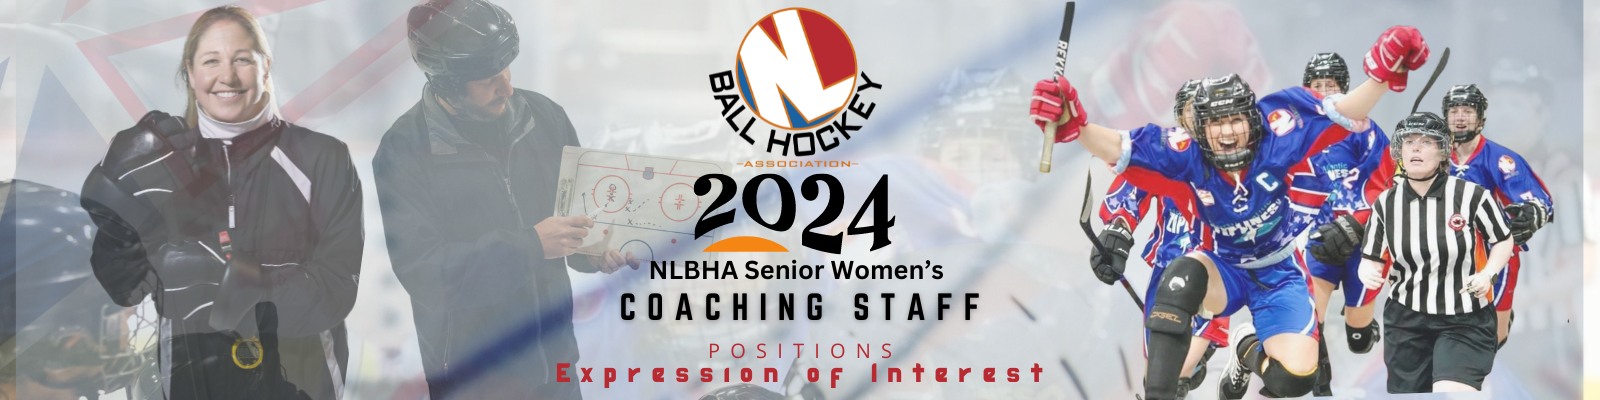 NLBHA Senior Womens Coaching 2024